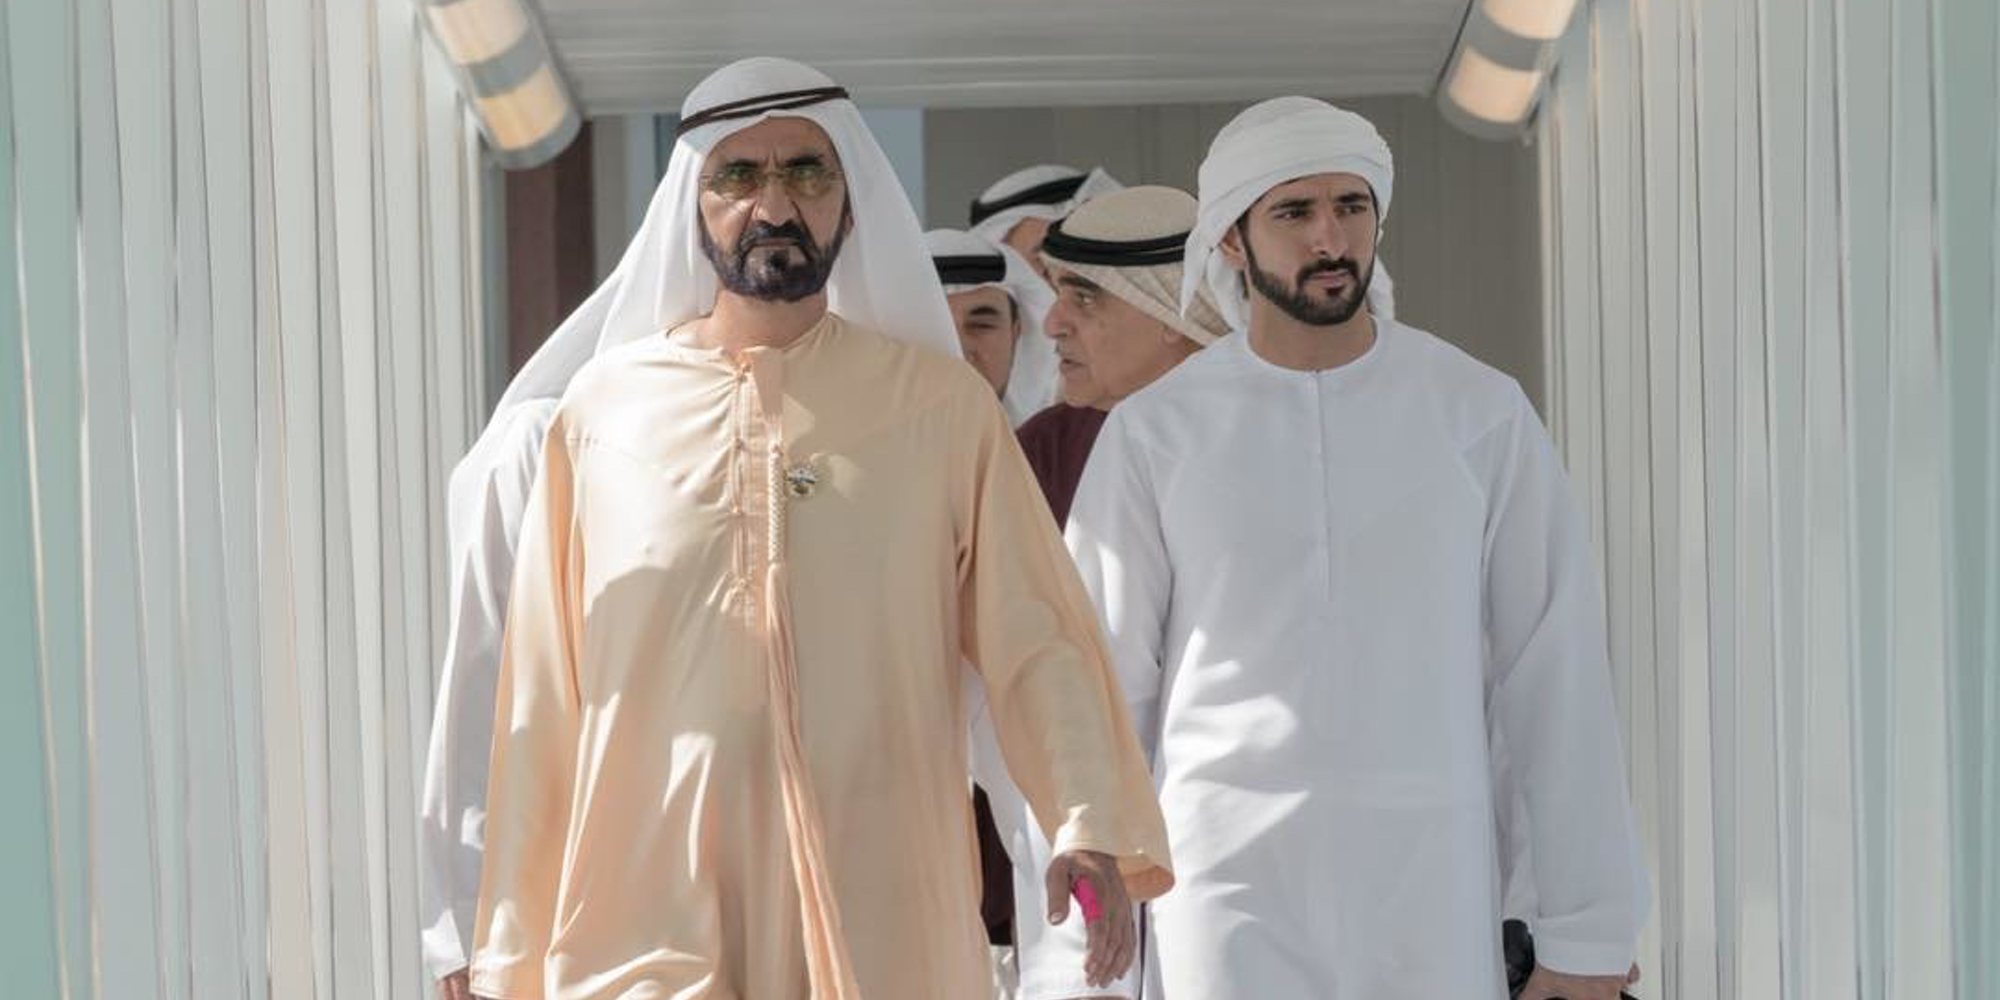 La Familia Real de Dubai niega el presunto secuestro de Latifa: "Está siendo cuidada en casa"